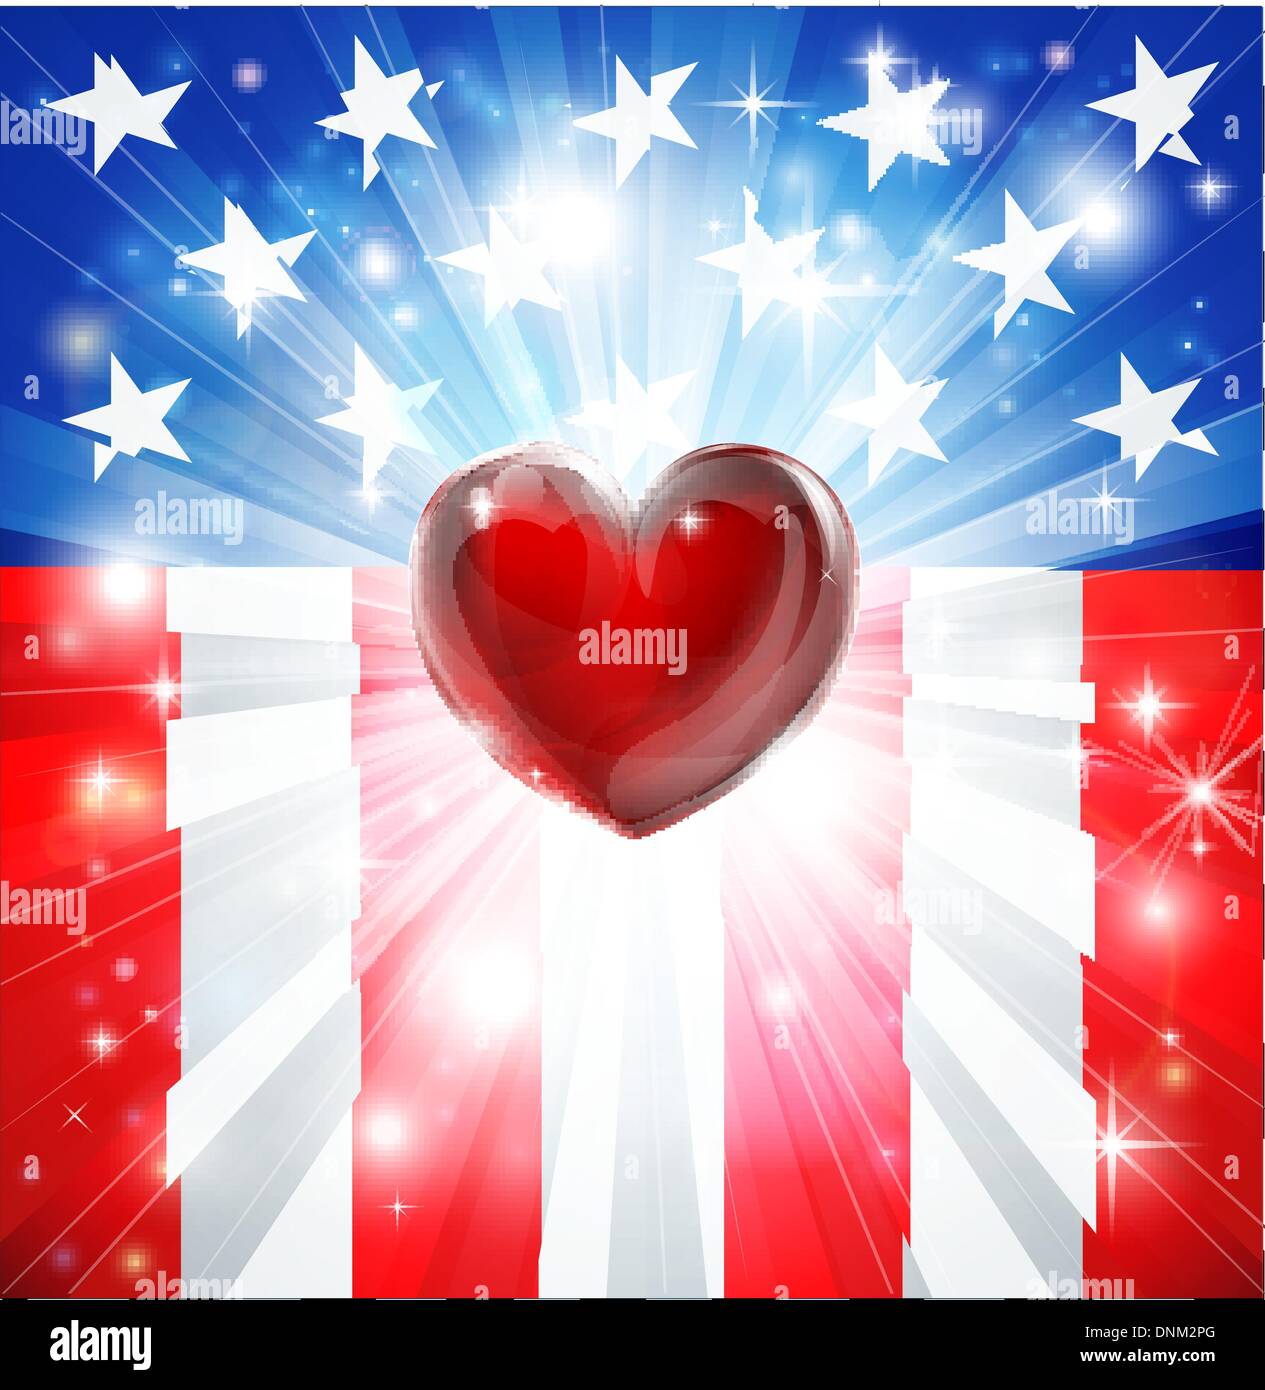 Drapeau américain fond patriotique avec coeur, concept pour l'amour du pays. Super pour 4e de juillet ou thèmes militaires. Illustration de Vecteur